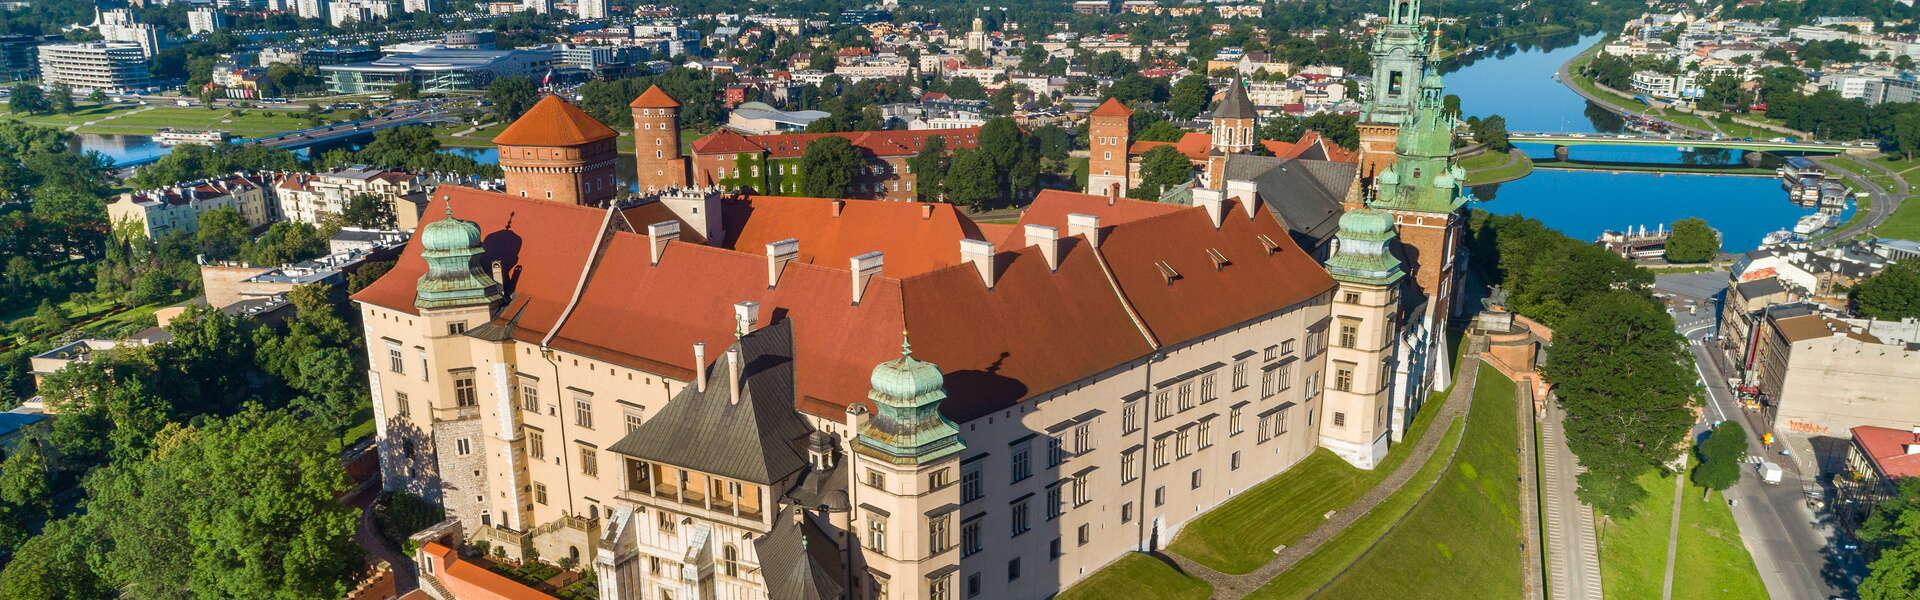 widok na Zamek Królewski na Wawelu